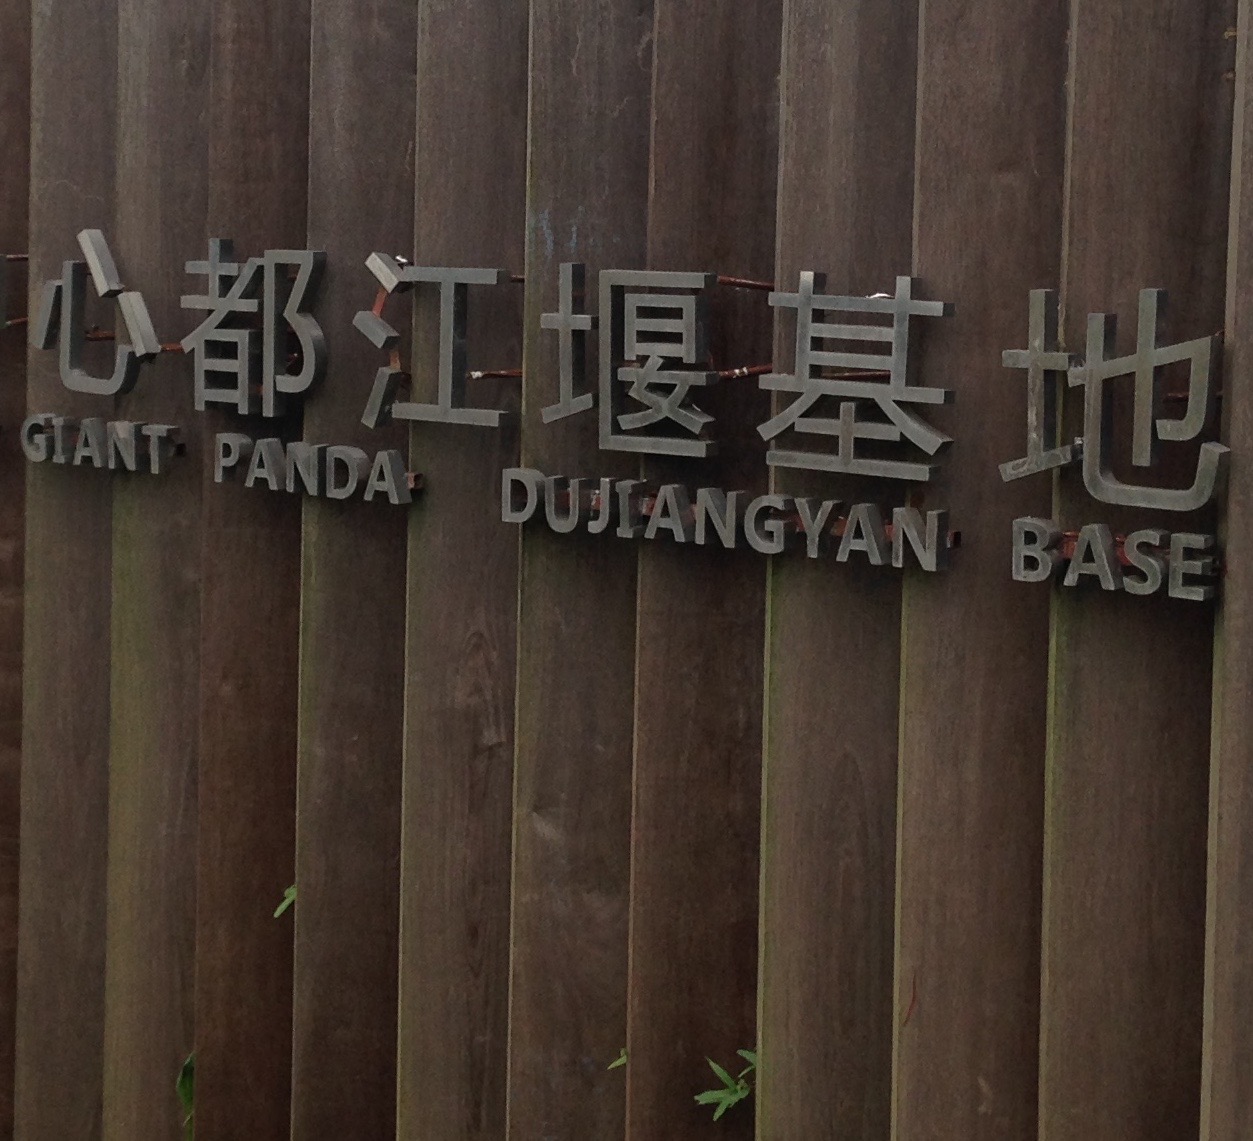 Tour of the Dujiangyan Panda Base